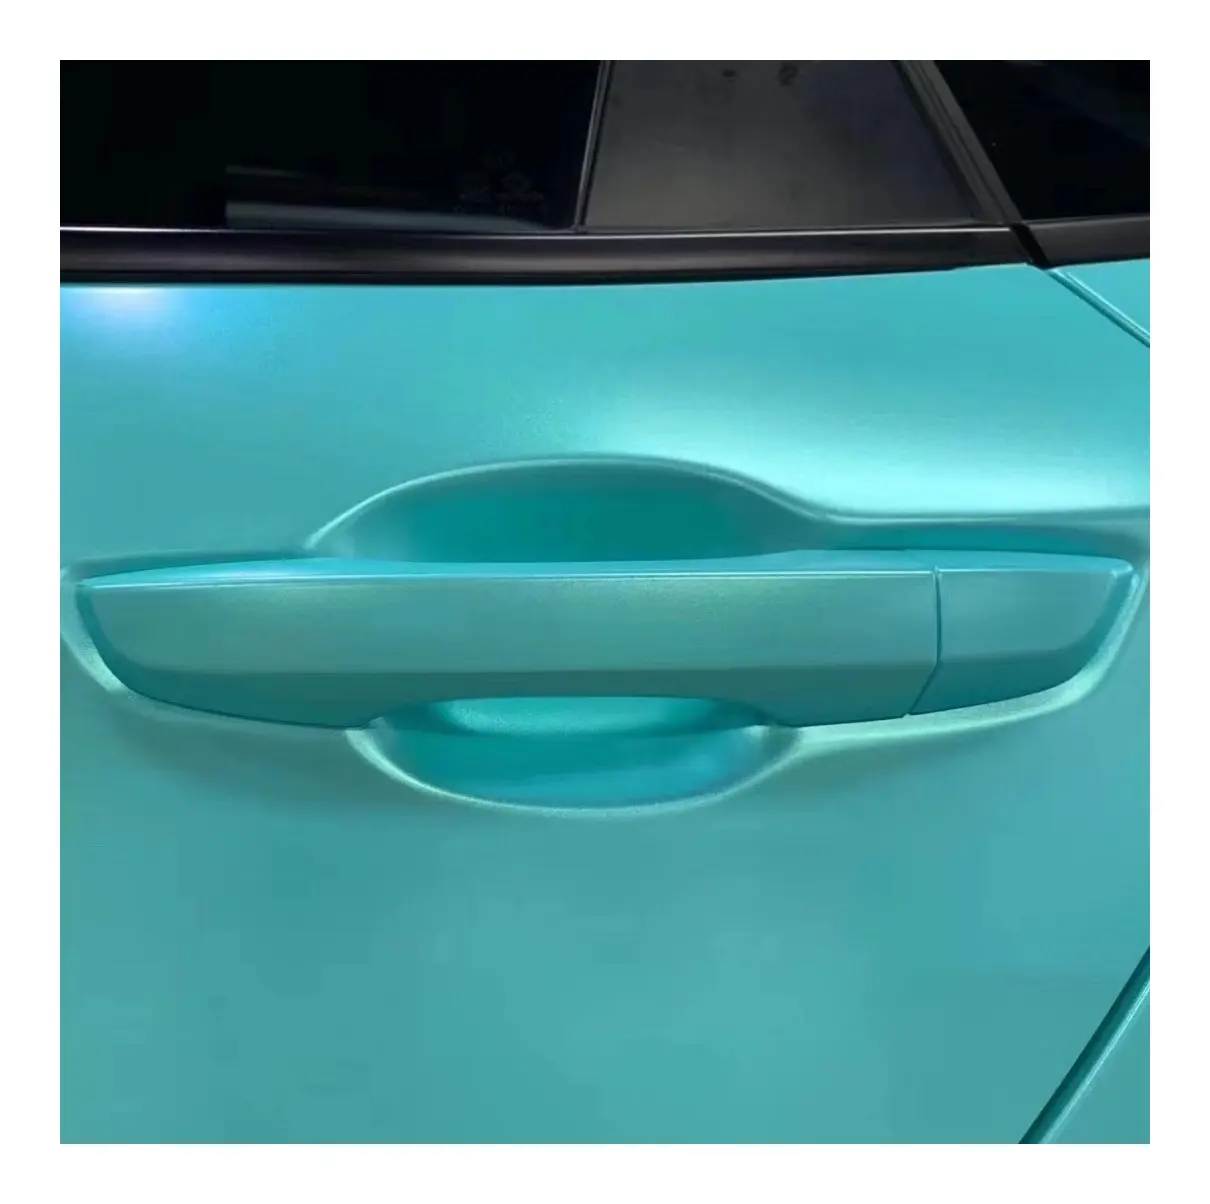 Yeni ücretsiz örnekleri Swatch Premium + otomatik sarma vinil araç örtüsü Sticker araç vücut filmi